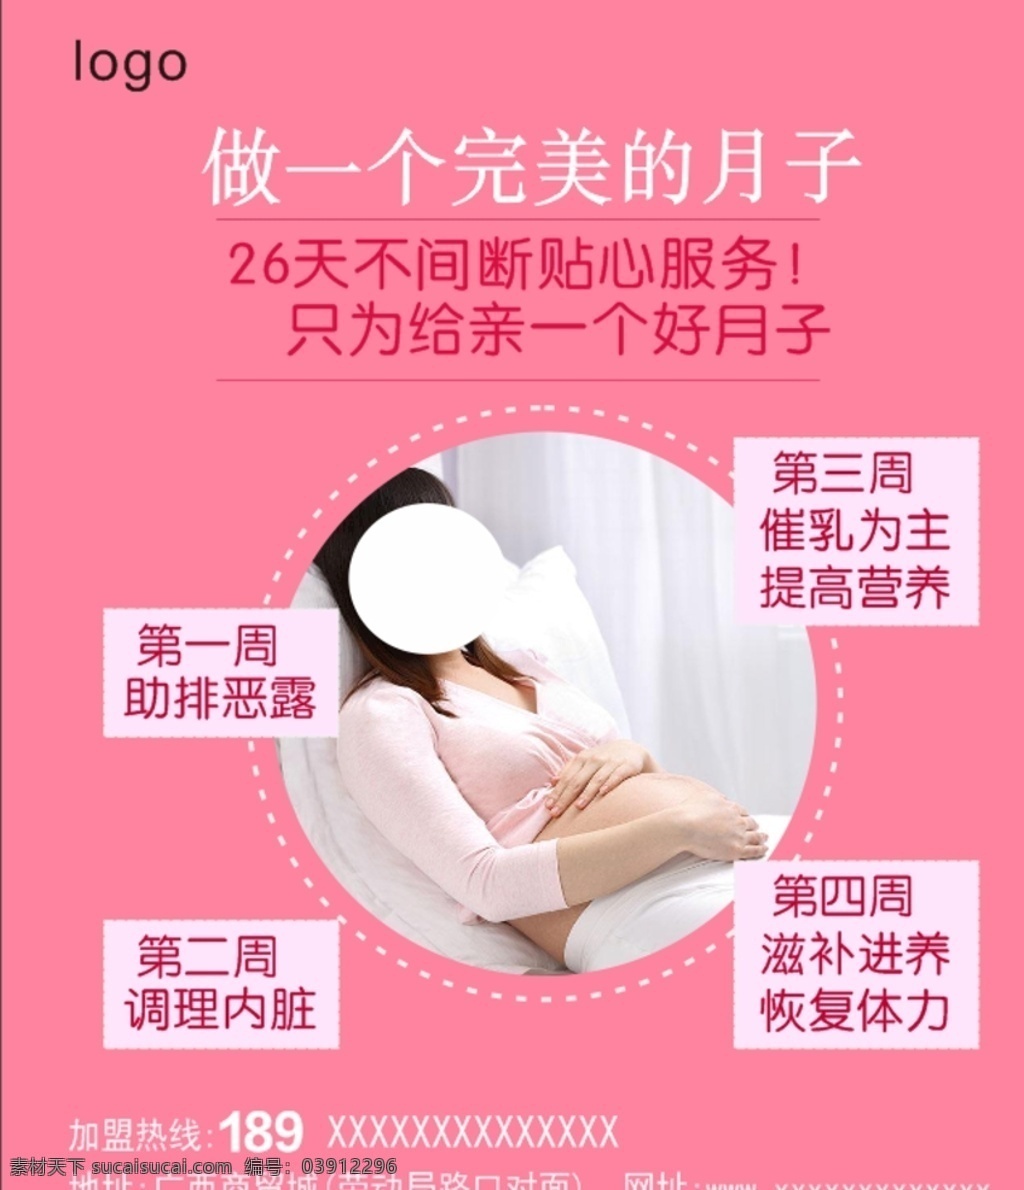 月子 母婴护理 海报 婴儿 孕妇 母婴 服务 护理 月子中心 医院 孕妈 怀孕 母亲 二胎 二胎政策 模板